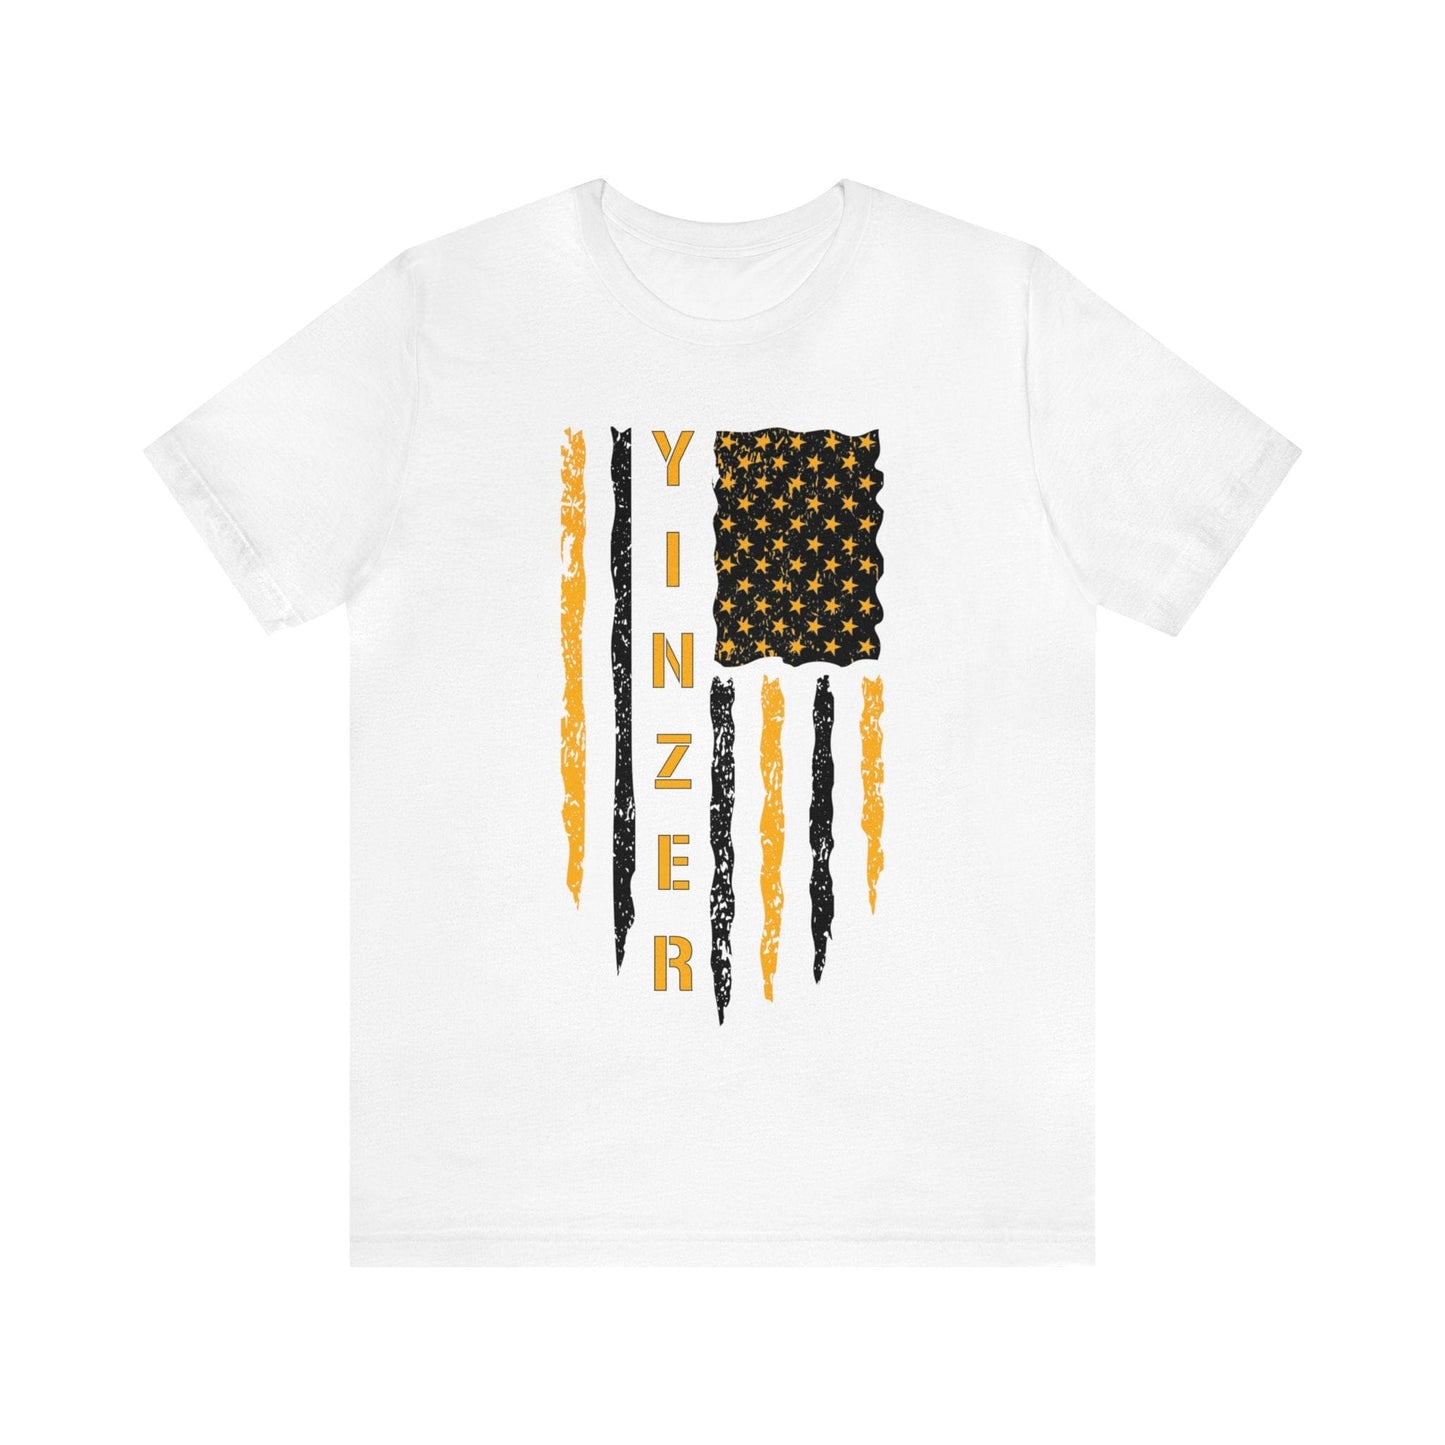 Yinzer Flag T-Shirt: Gold on Black, Pittsburgh Legacy & Patriotic Burgh Shirt T-Shirt Printify White S 